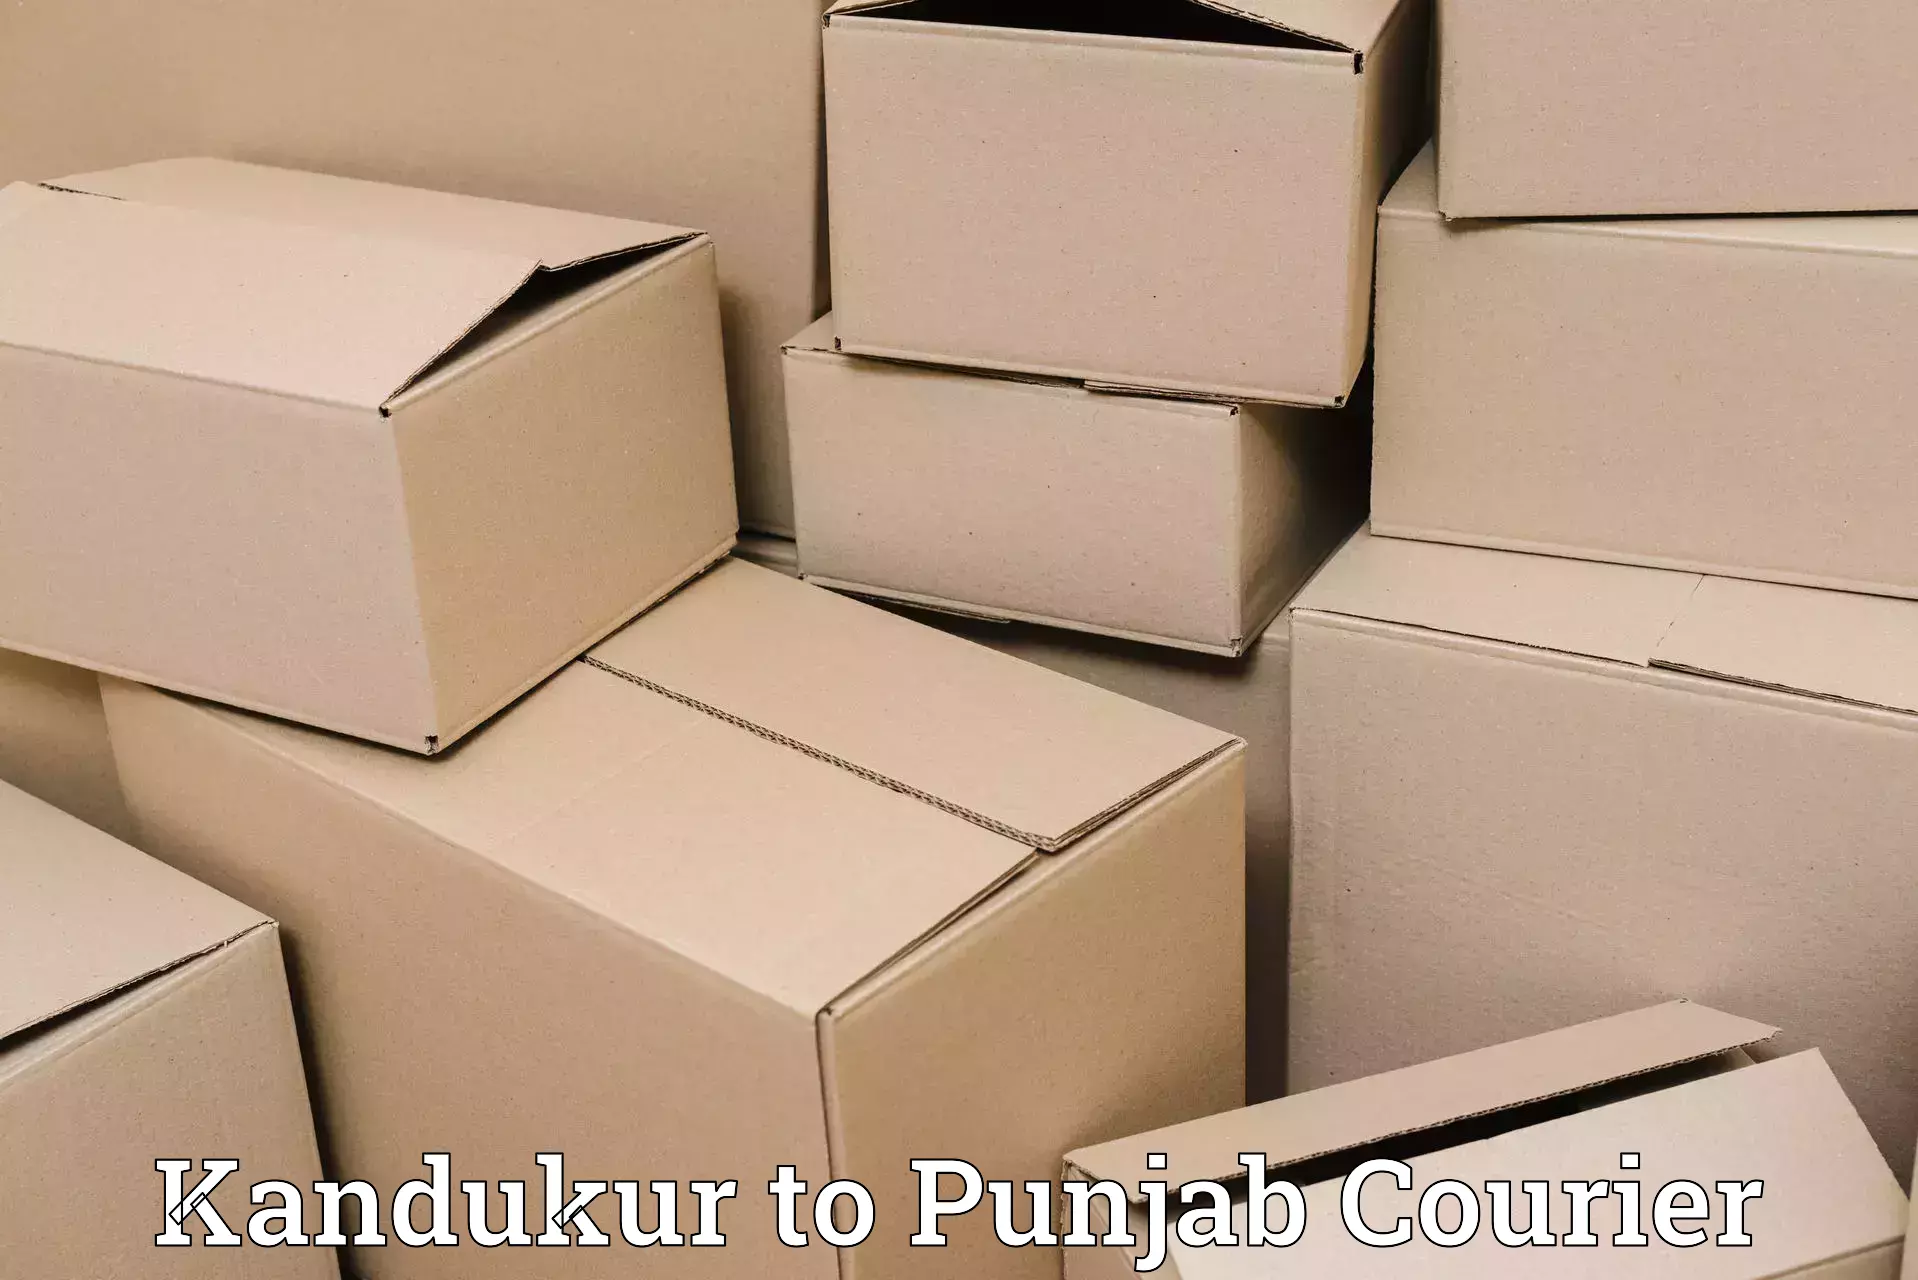 Nationwide courier service Kandukur to Mandi Gobindgarh